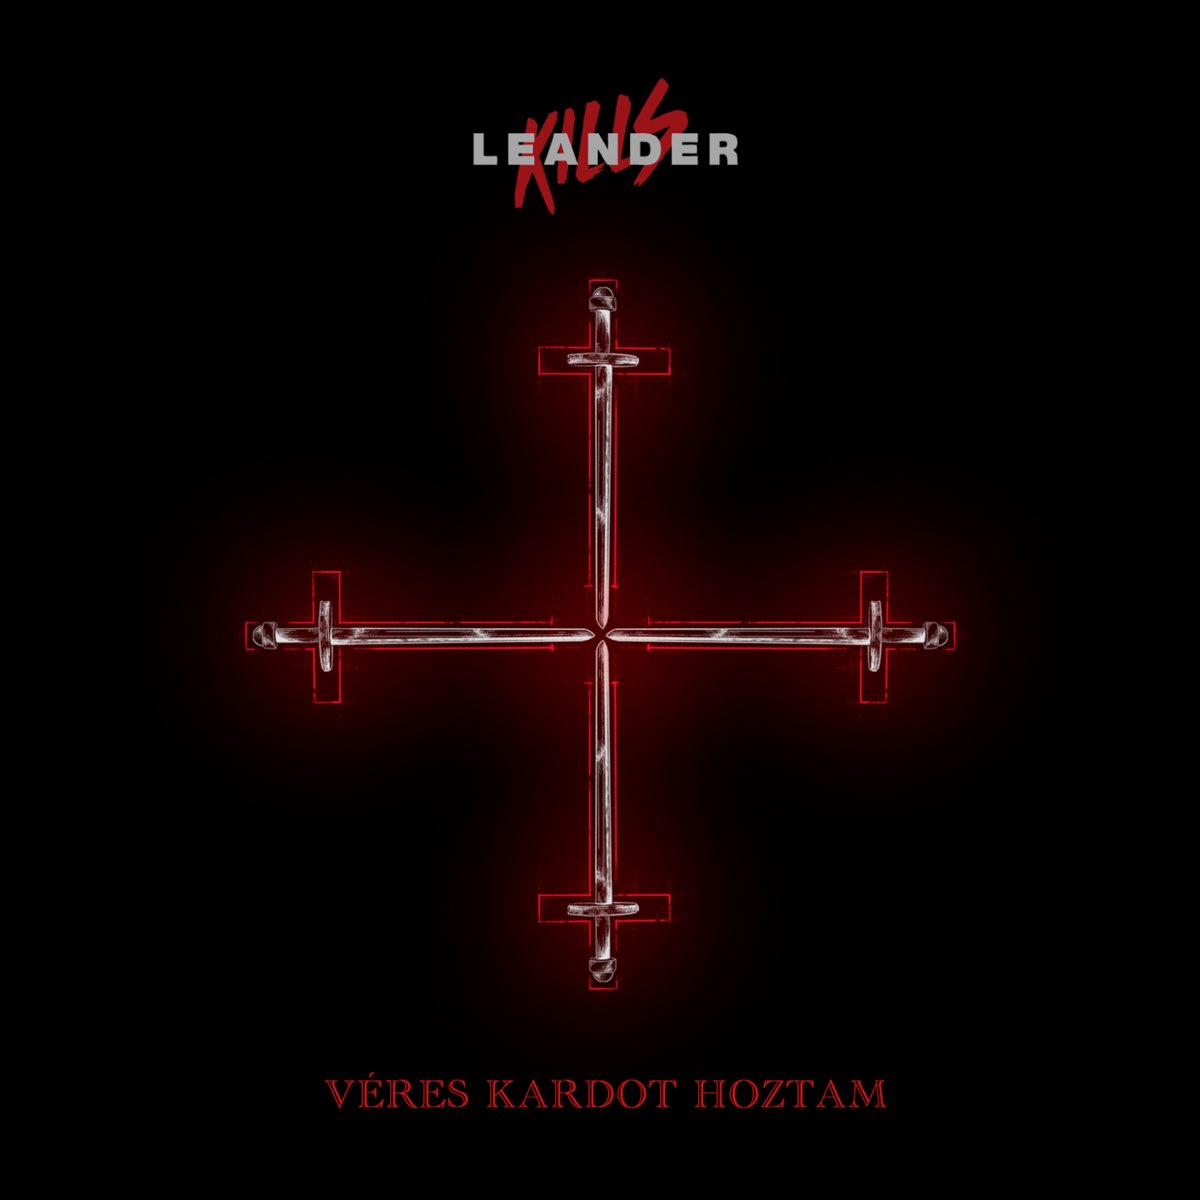 Véres kardot hoztam (István, a király) - Single - Album by Leander Kills -  Apple Music